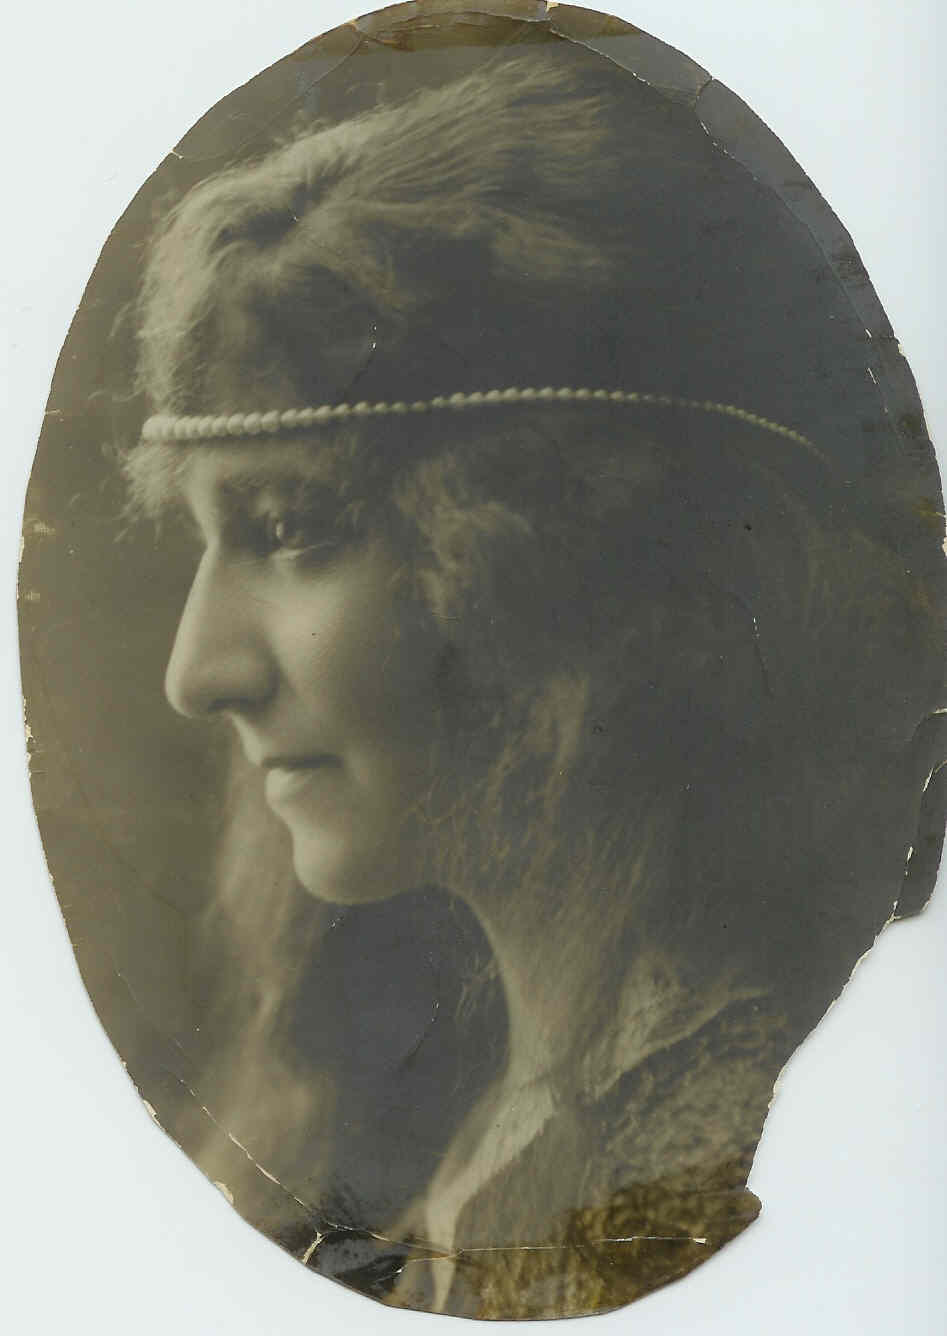 Dora Krafcik Waltman photo taken about 1923